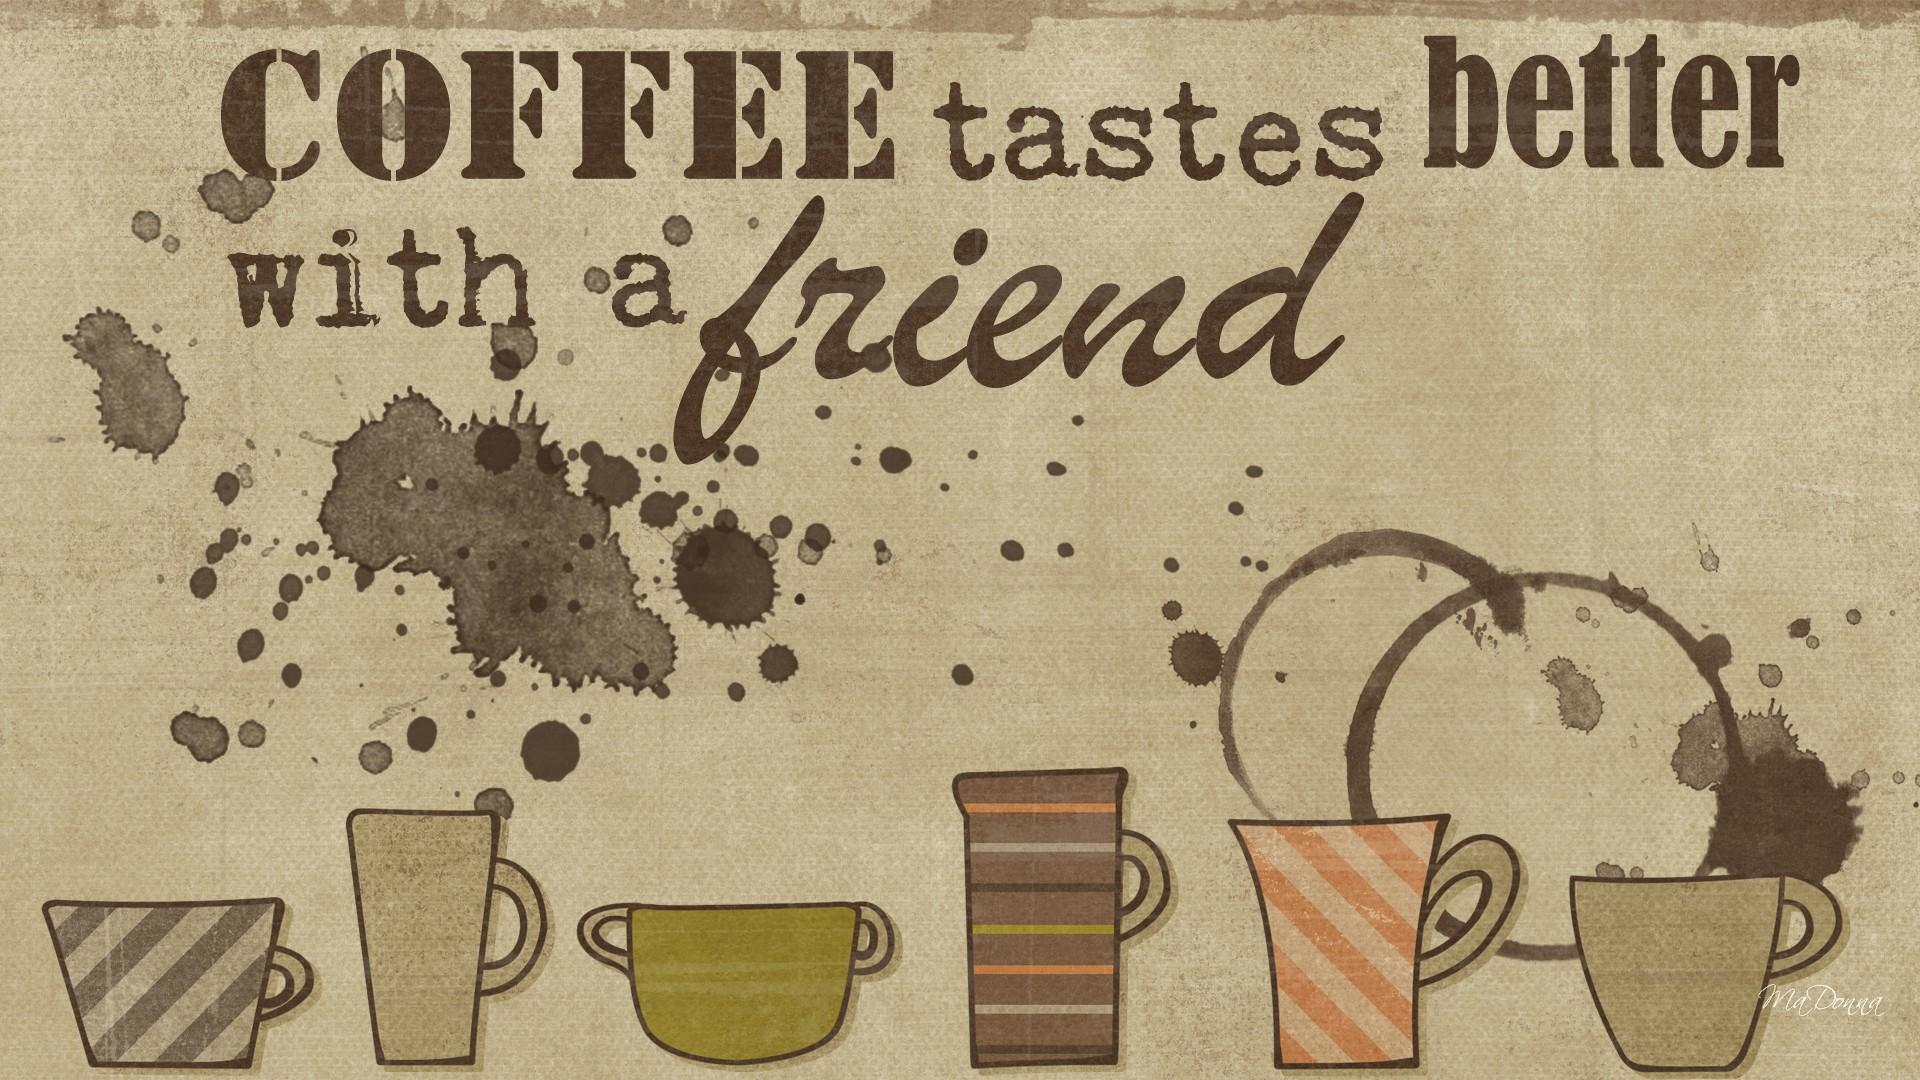 My good coffee. Кофе обои. Кофейня обои. Обои для кафе. Обои с надписью кофе.